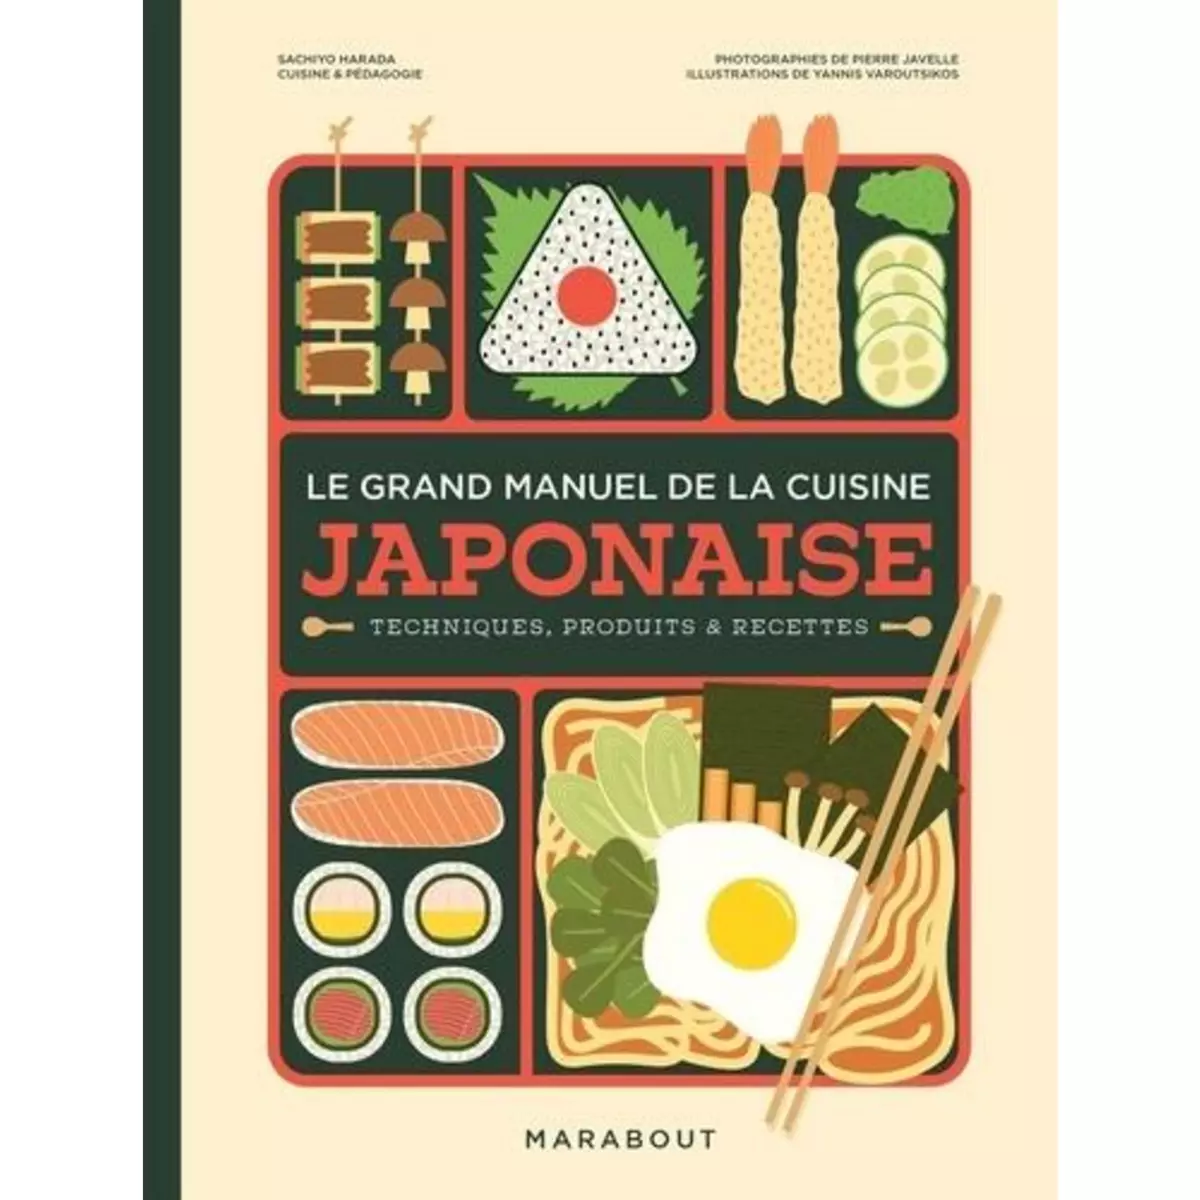  LE GRAND MANUEL DE LA CUISINE JAPONAISE. COMPRENDRE, APPRENDRE & MAITRISER, Harada Sachiyo